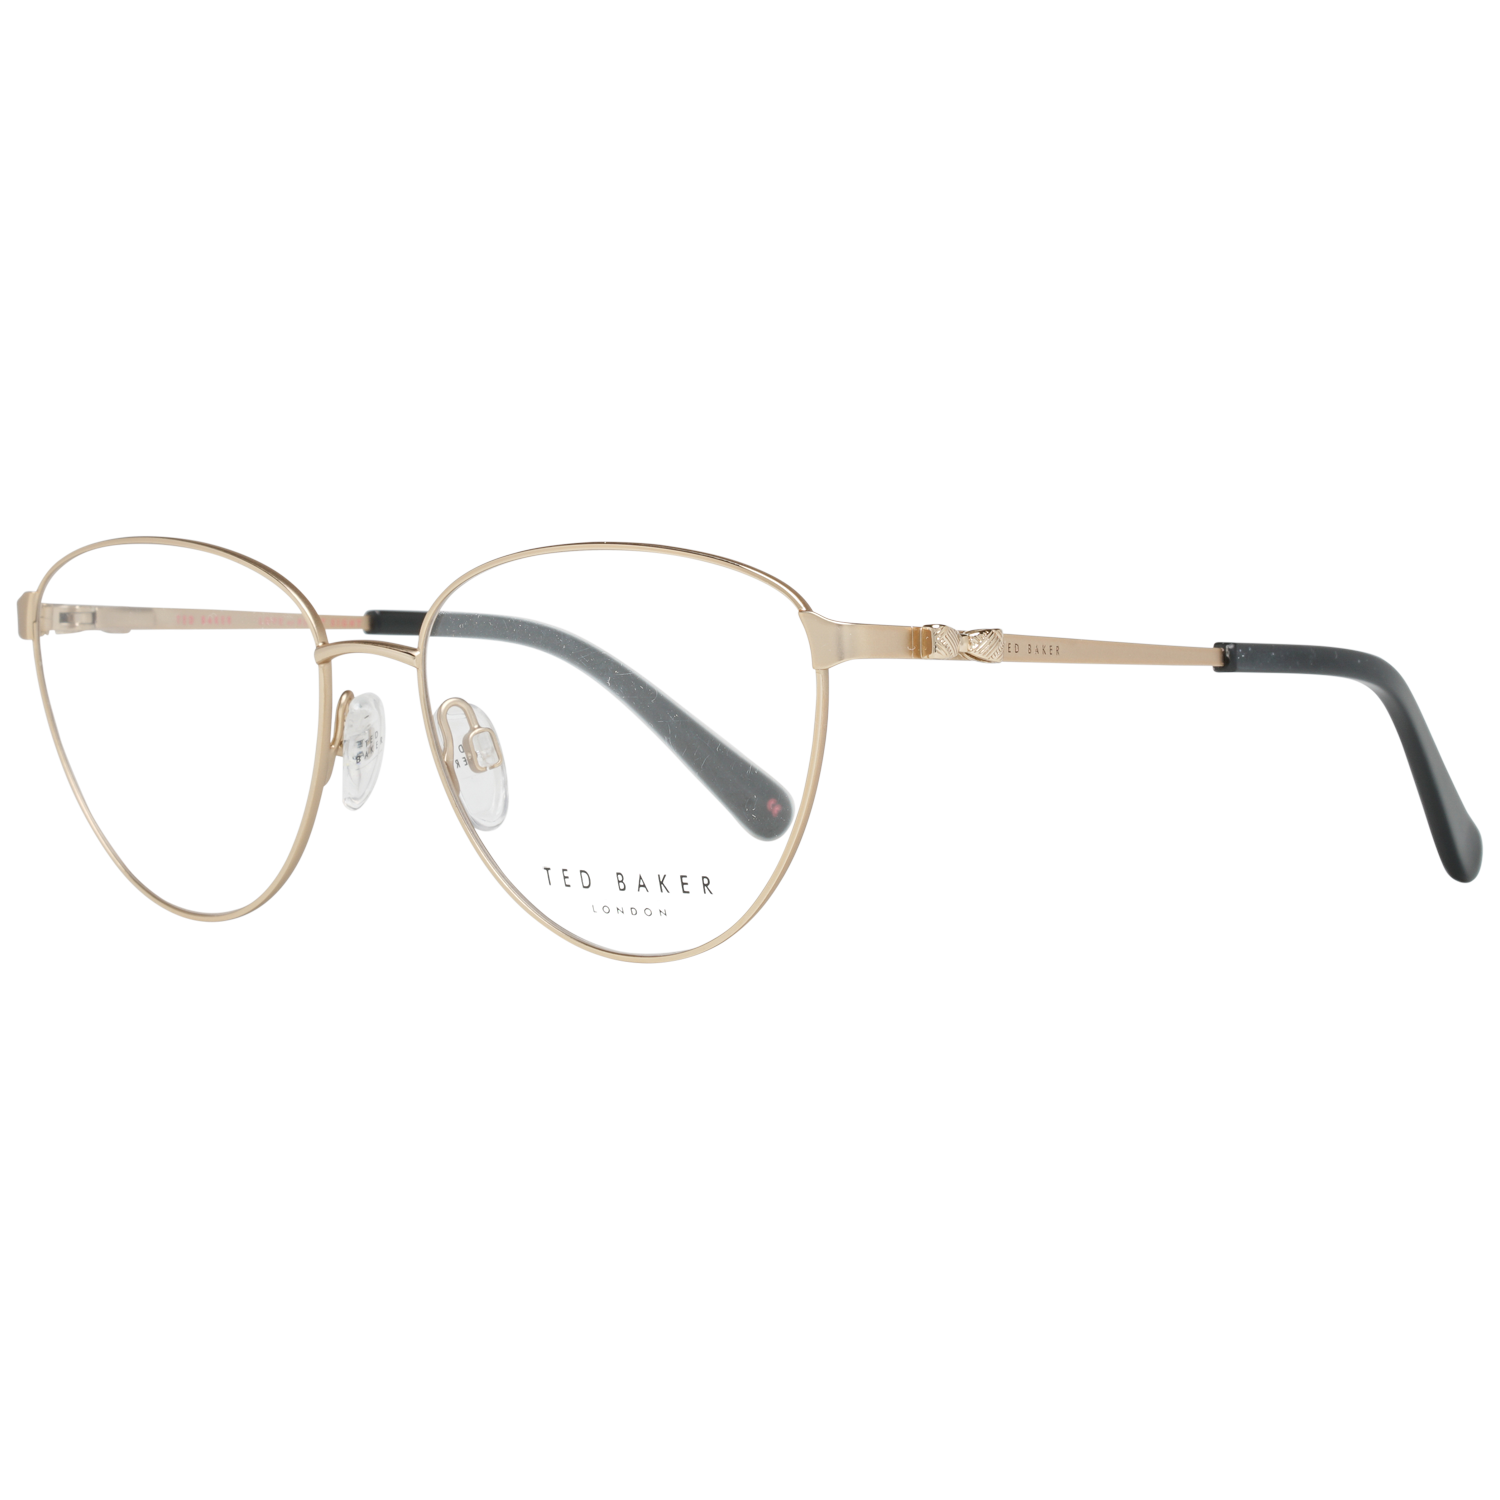 Ted Baker Frames Ted Baker Prescription Glasses Optical Frame TB2252 400 52 Eyeglasses Eyewear UK USA Australia 